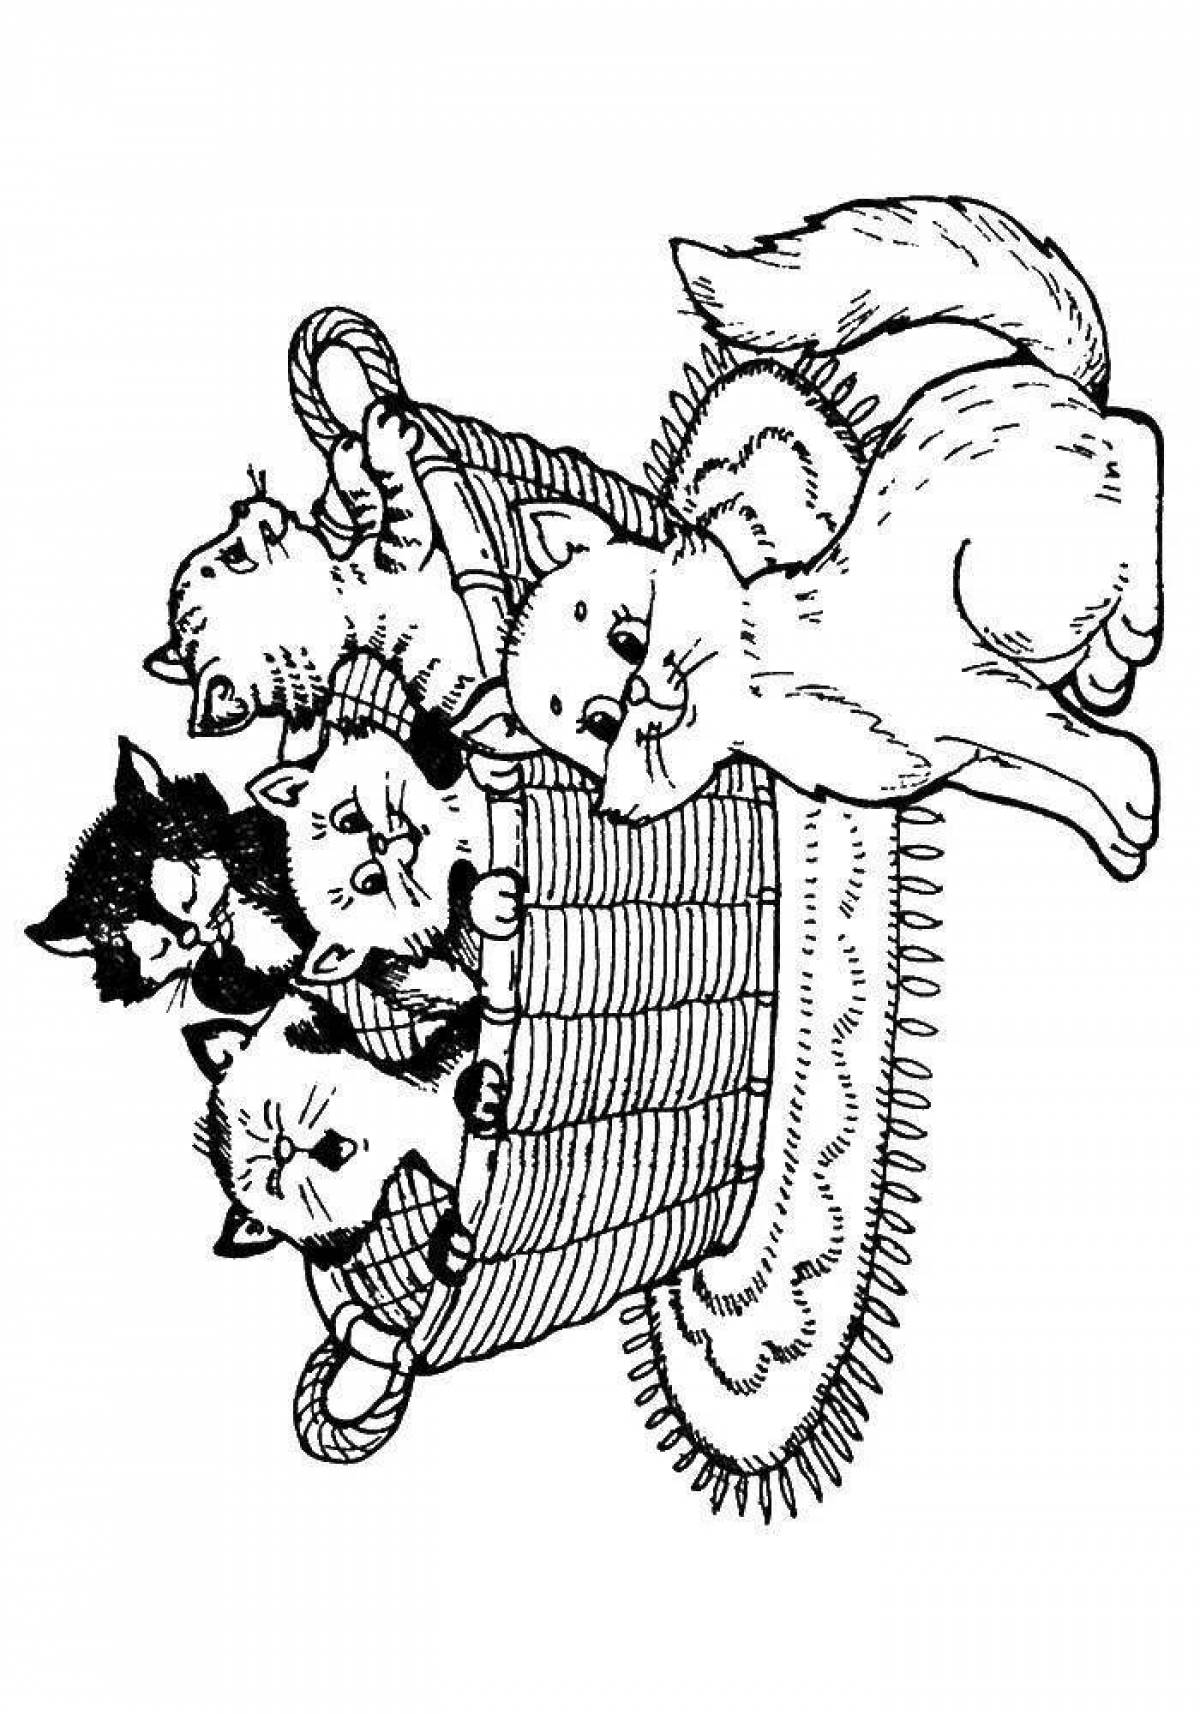 Kittens in a basket #8